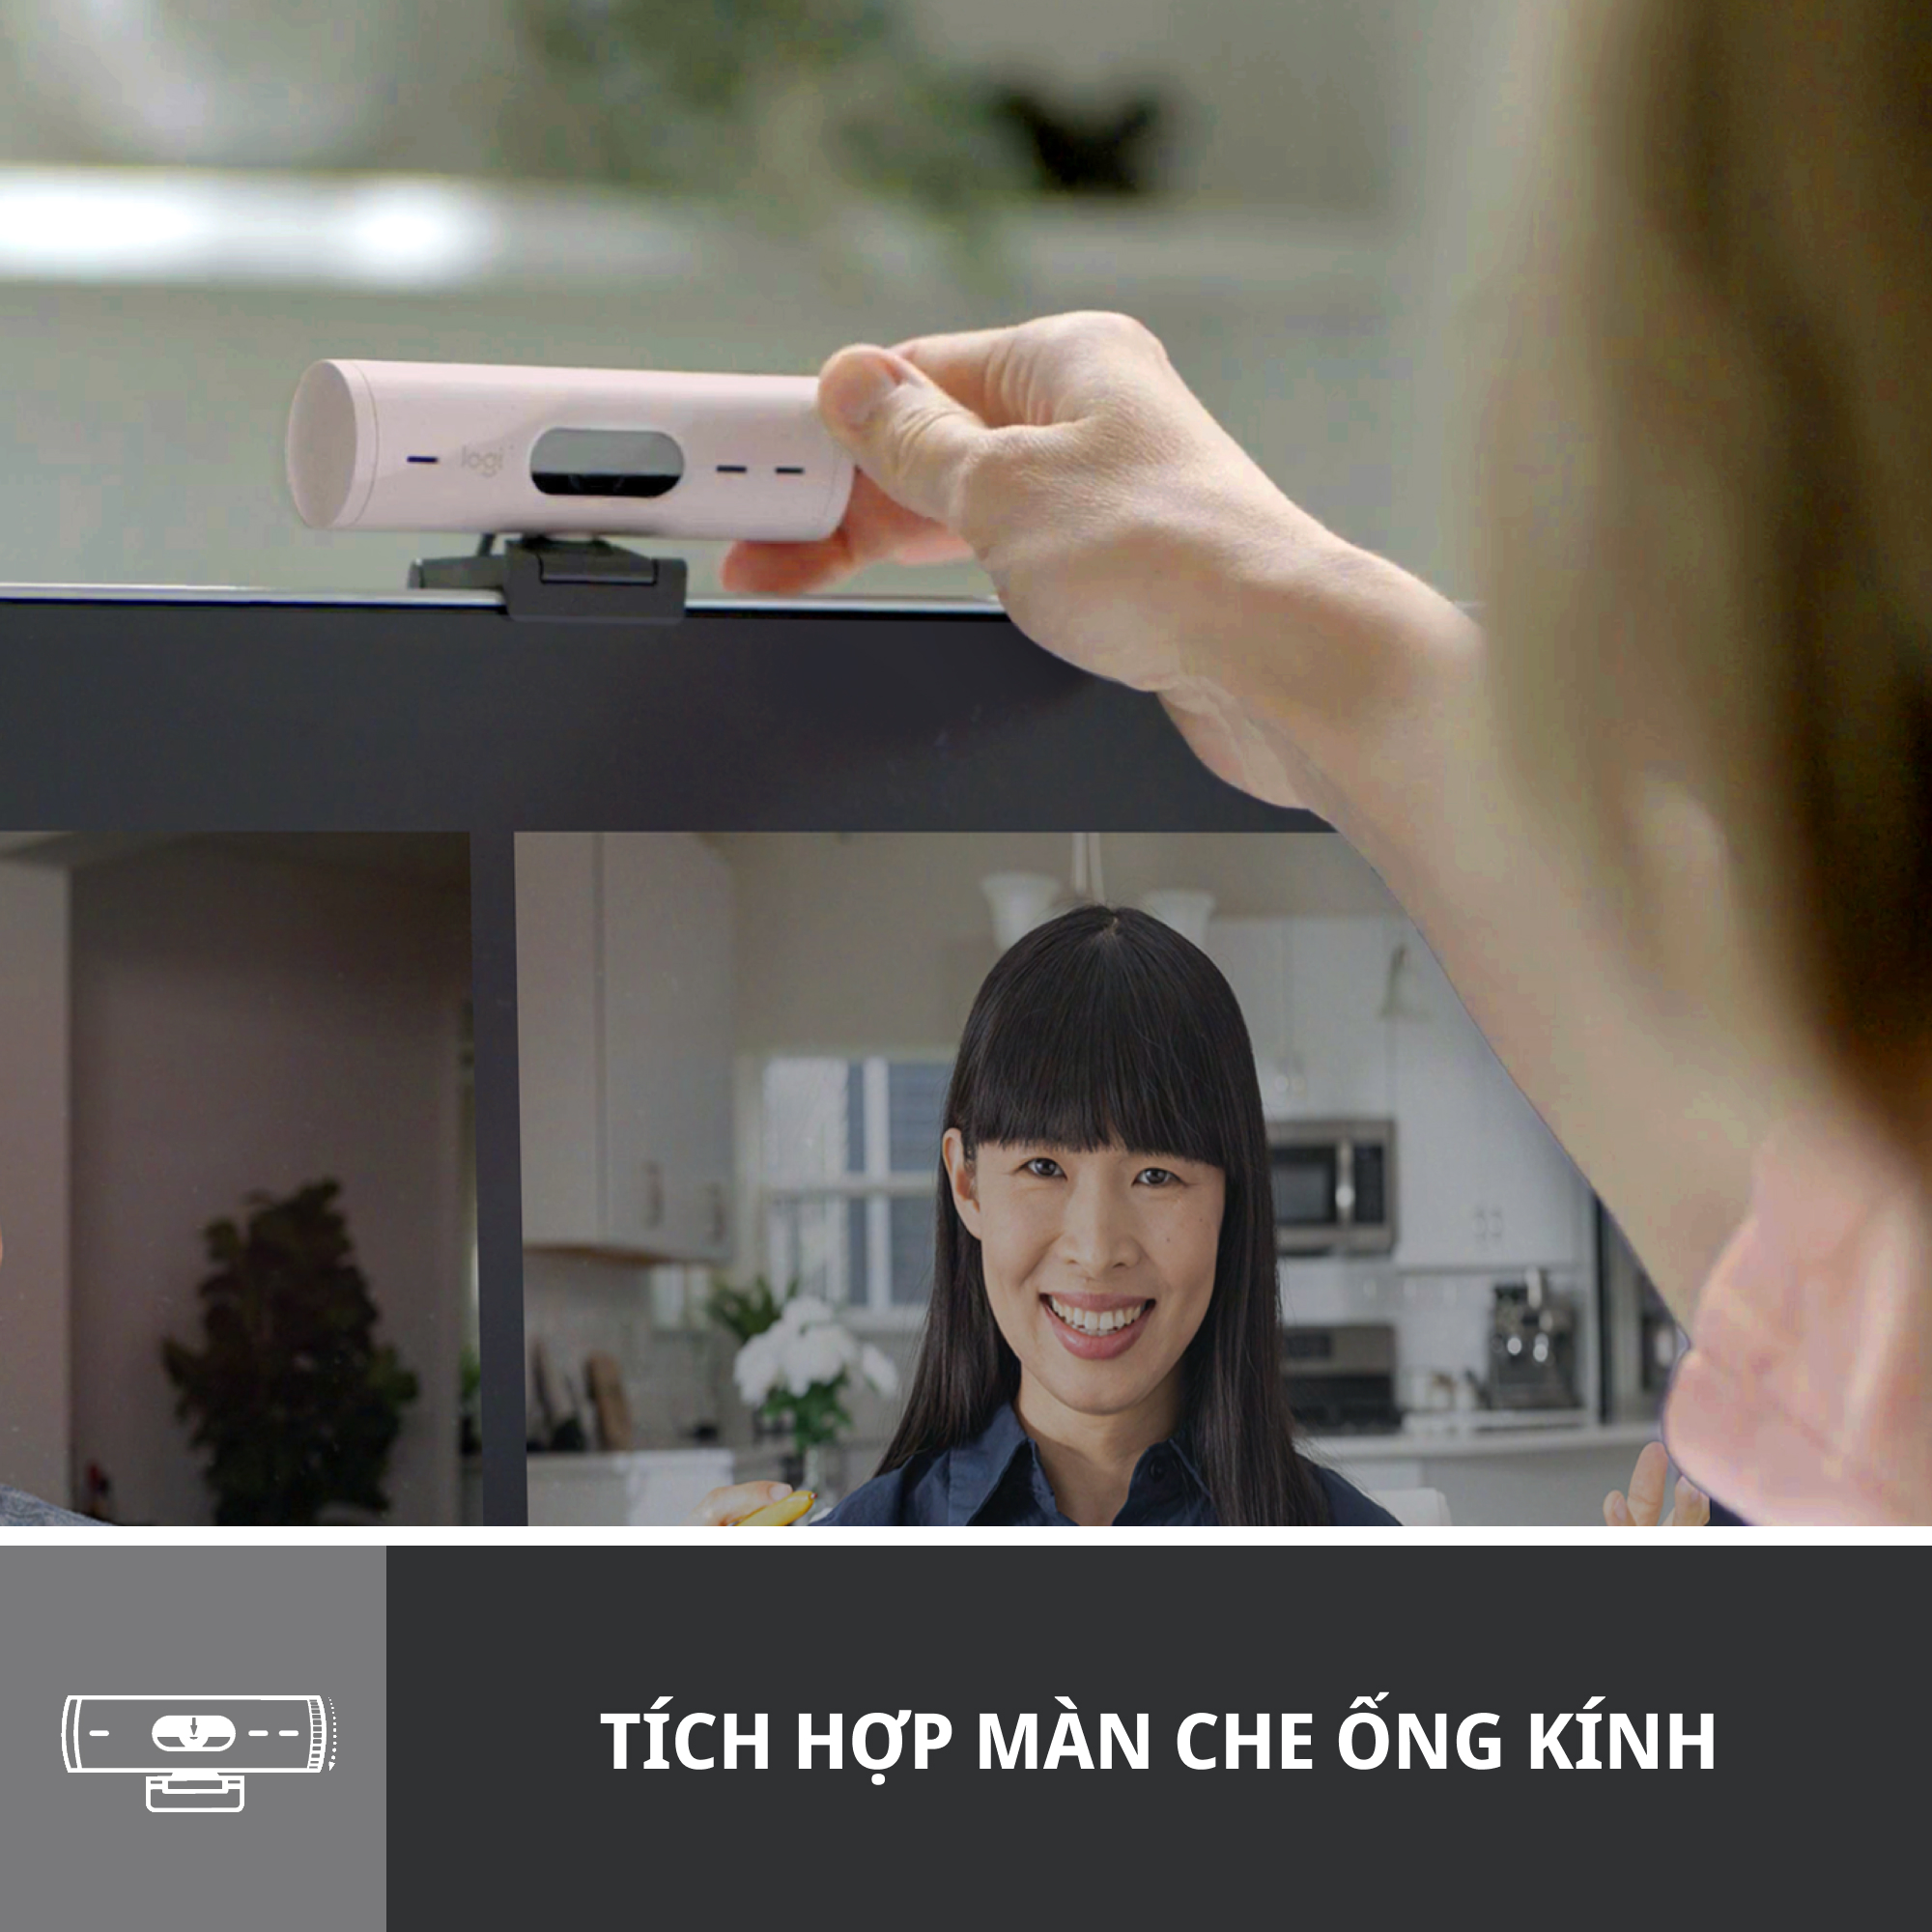 Webcam Logitech Full HD Brio 500 - Tự động điều chỉnh ánh sáng, Tự động lấy khung hình,Show mode, Mic kép giảm ồn, nắp che bảo mật, Hoạt động với Microsoft Teams, Google Meet, Zoom - Hàng chính hãng